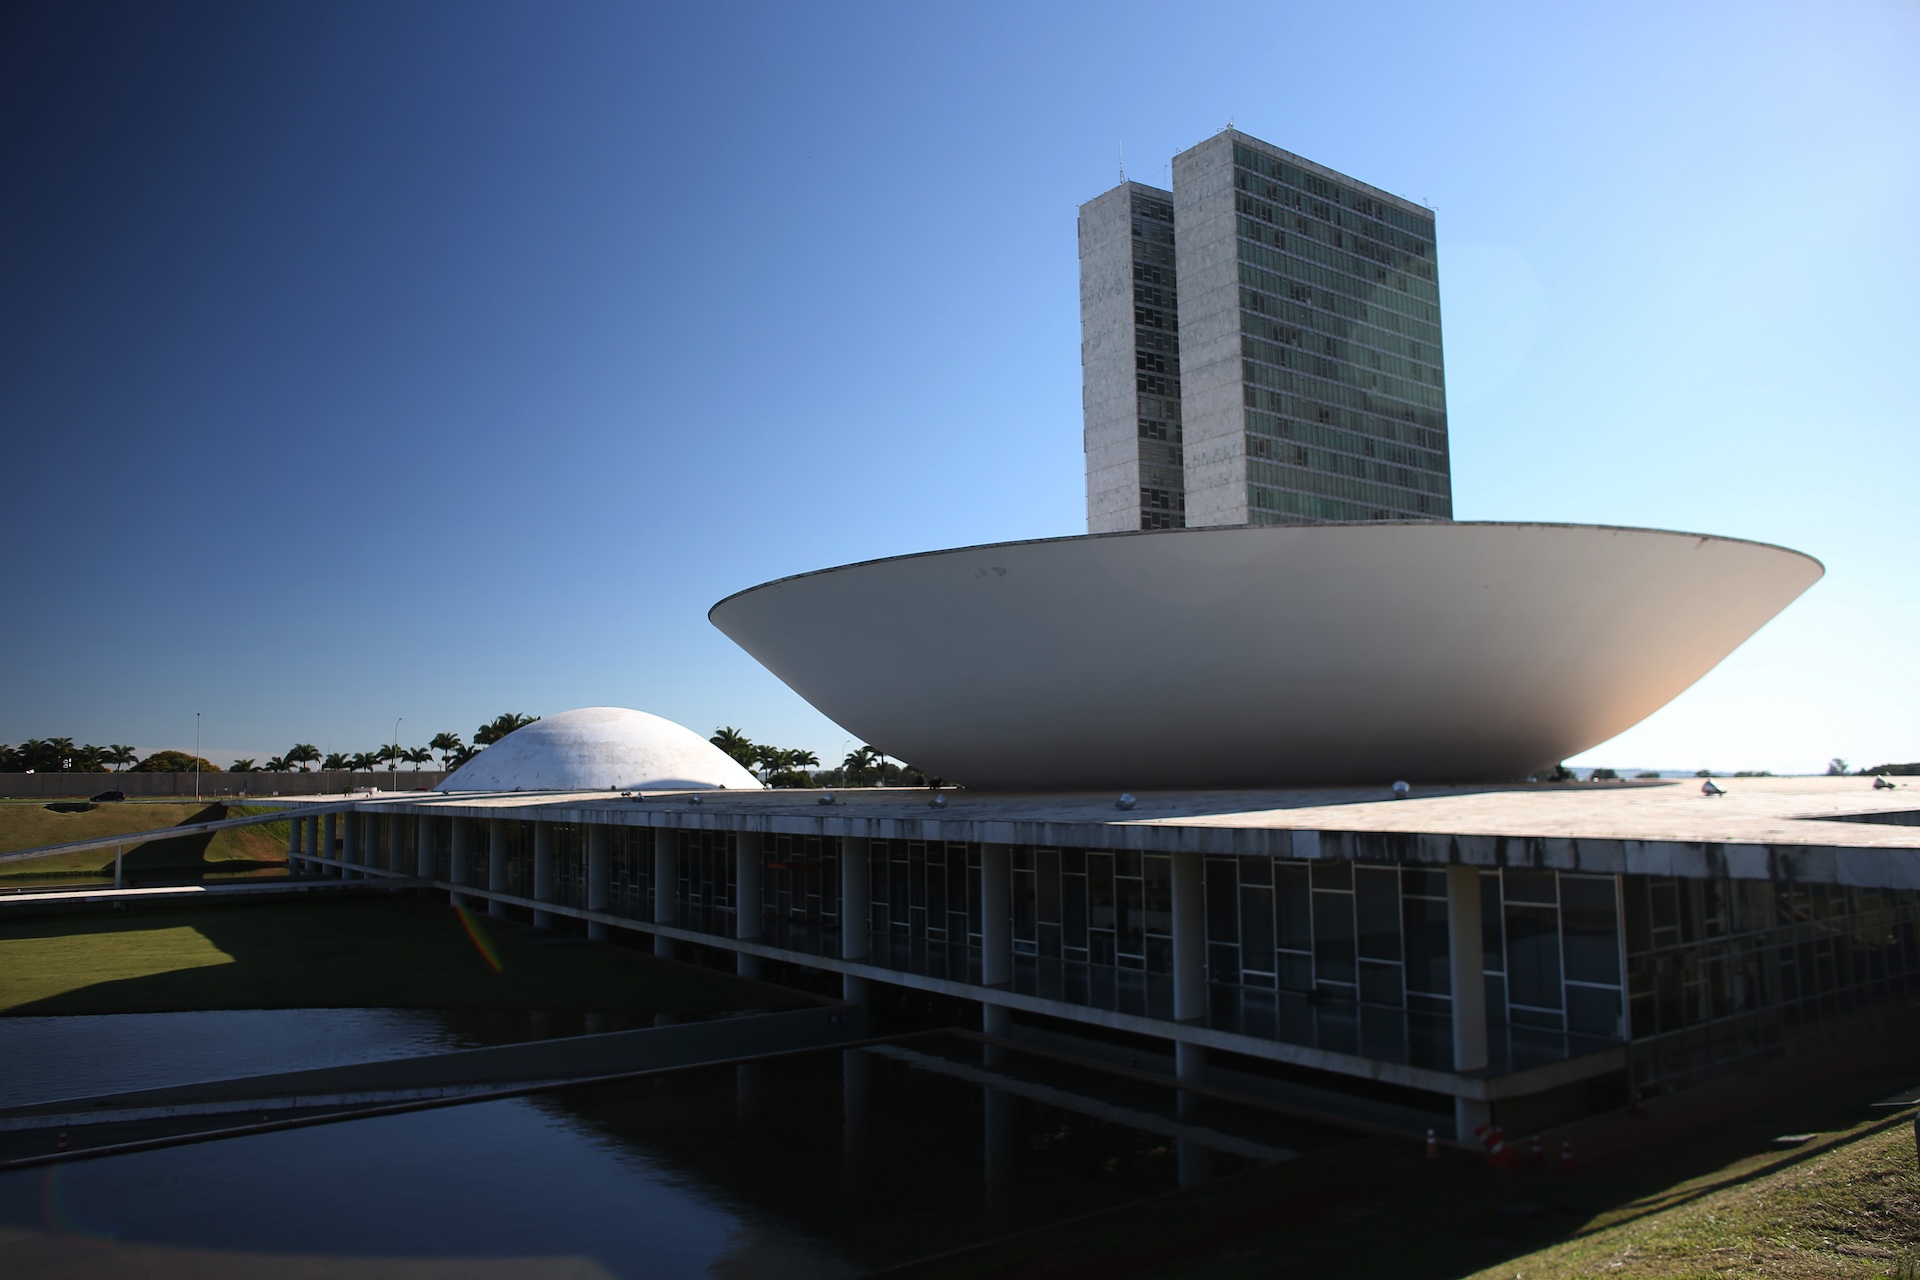 El edificio del Congreso Nacional fue diseñado por Oscar Niemeyer con diseño estructural del ingeniero Joaquim Cardozo, y sigue el estilo de la arquitectura moderna brasileña. (Foto: Roberto Castro/MTur)